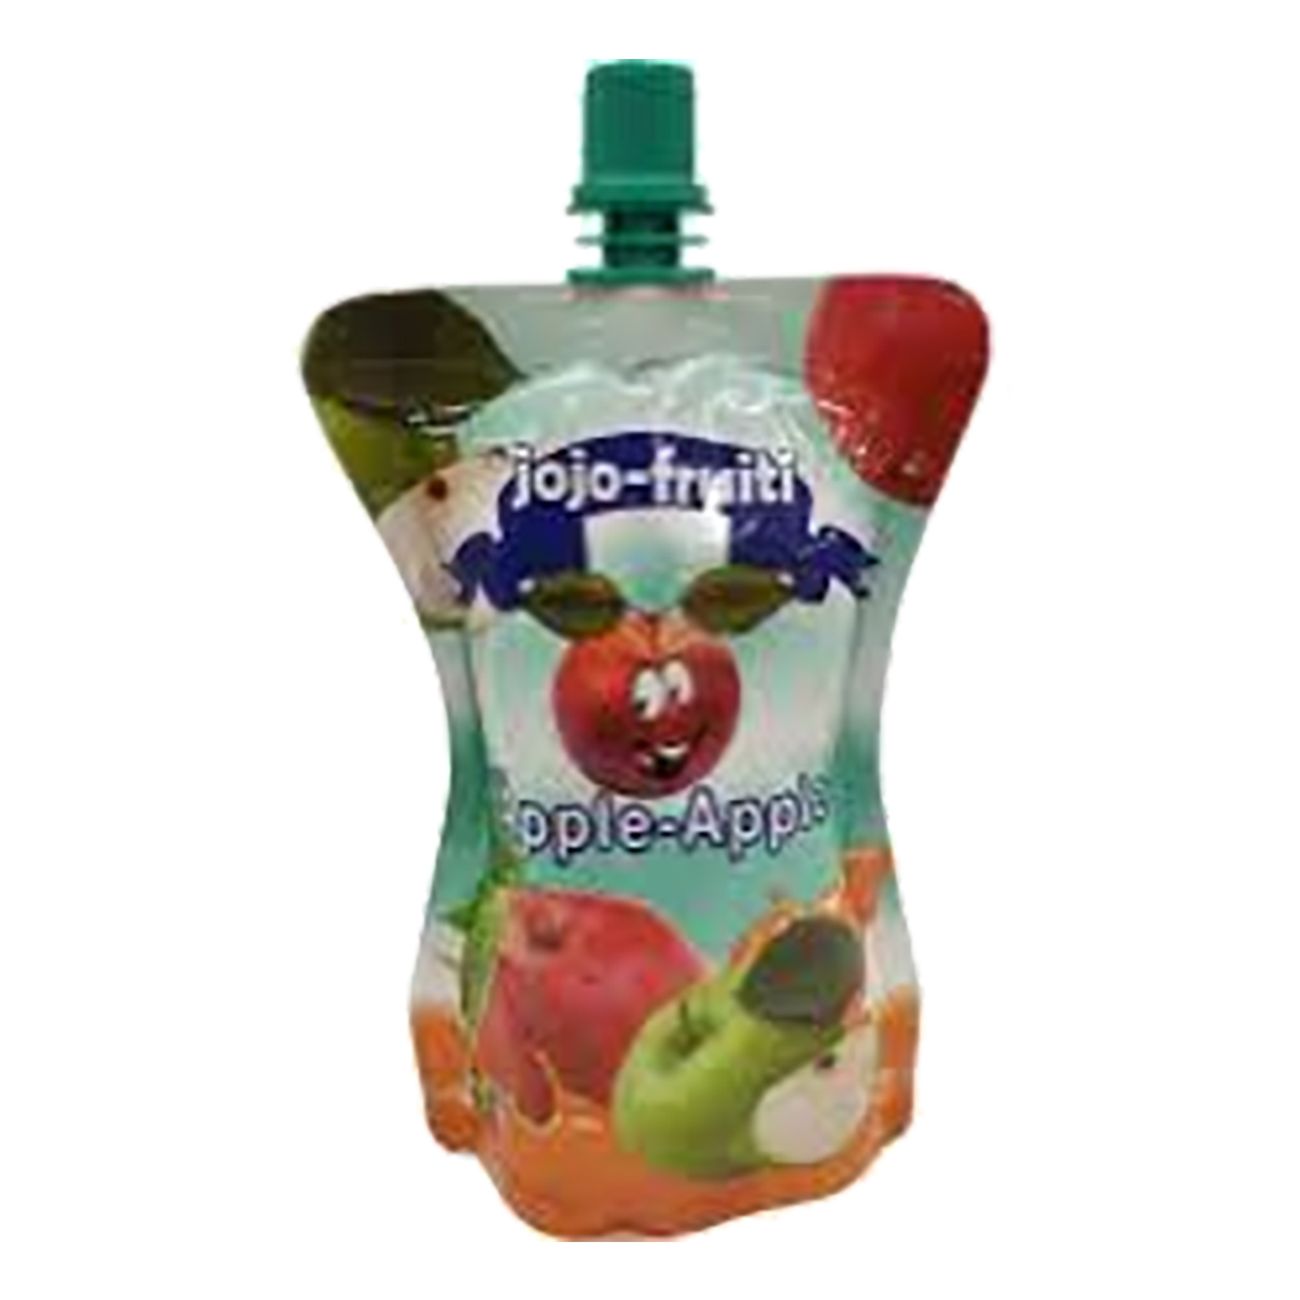 jojo-fruit-apple-79443-1